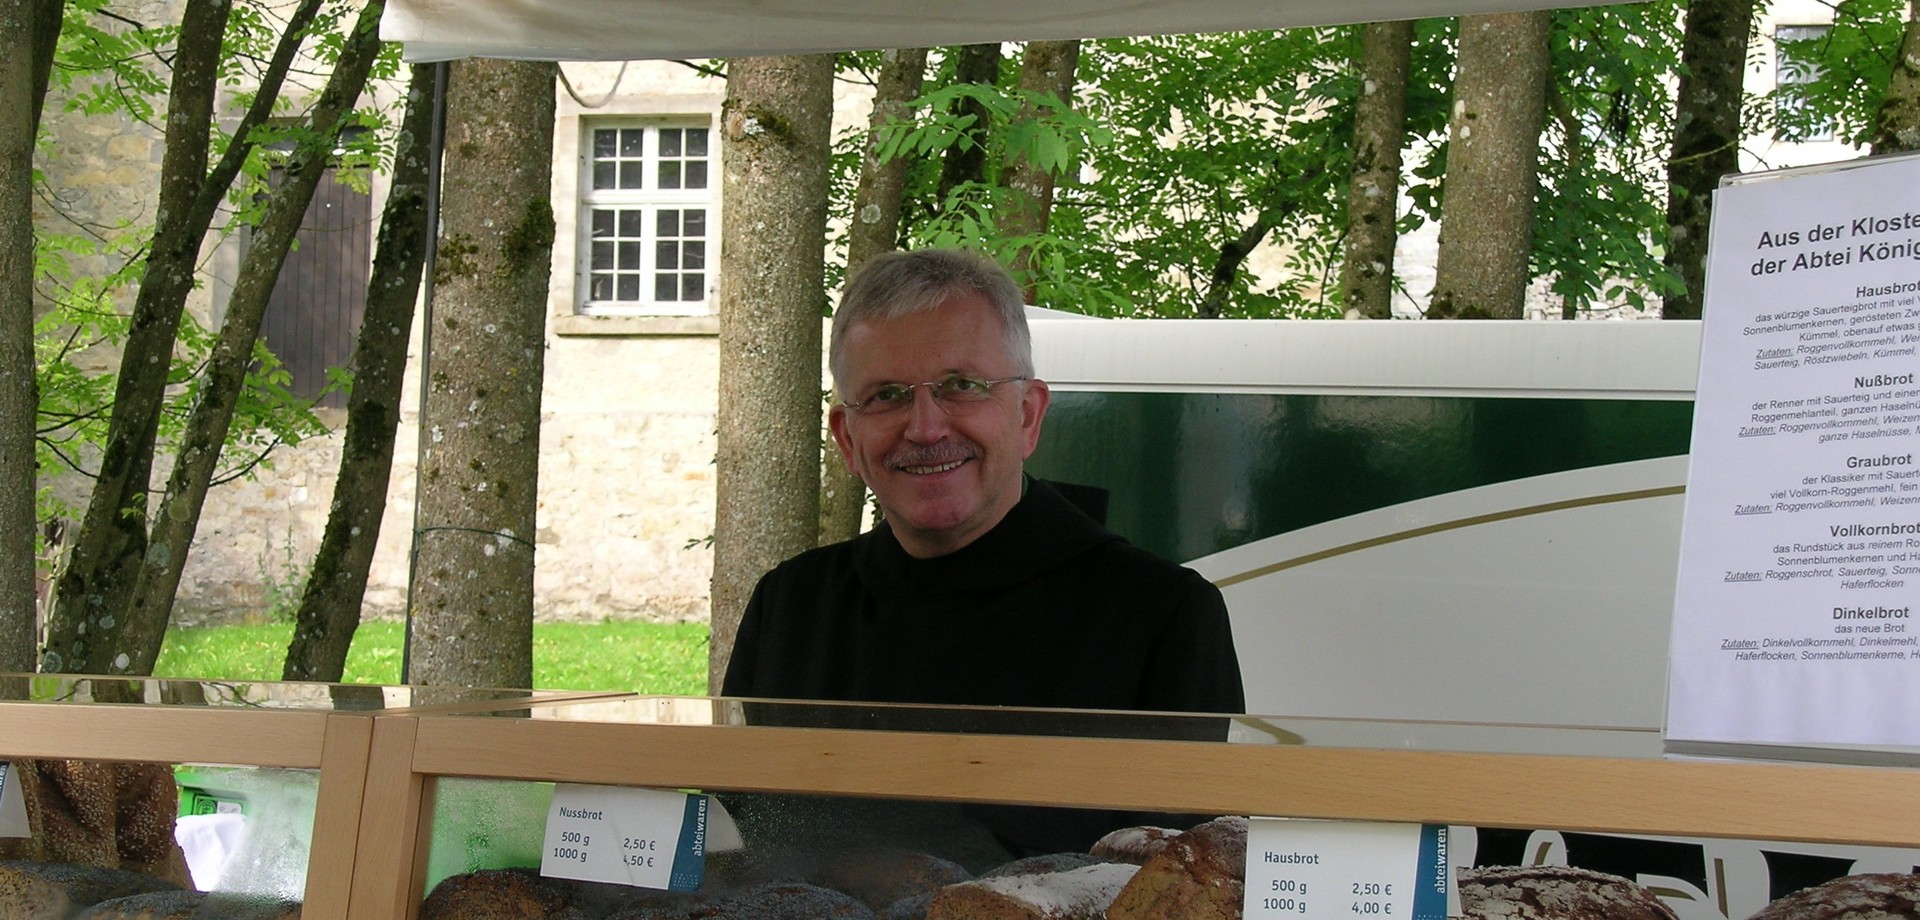 Auf dem Foto ist ein Benediktinermönch zu sehen, der die Waren aus Königsmünster präsentiert.

Foto: LWL/Tillmann